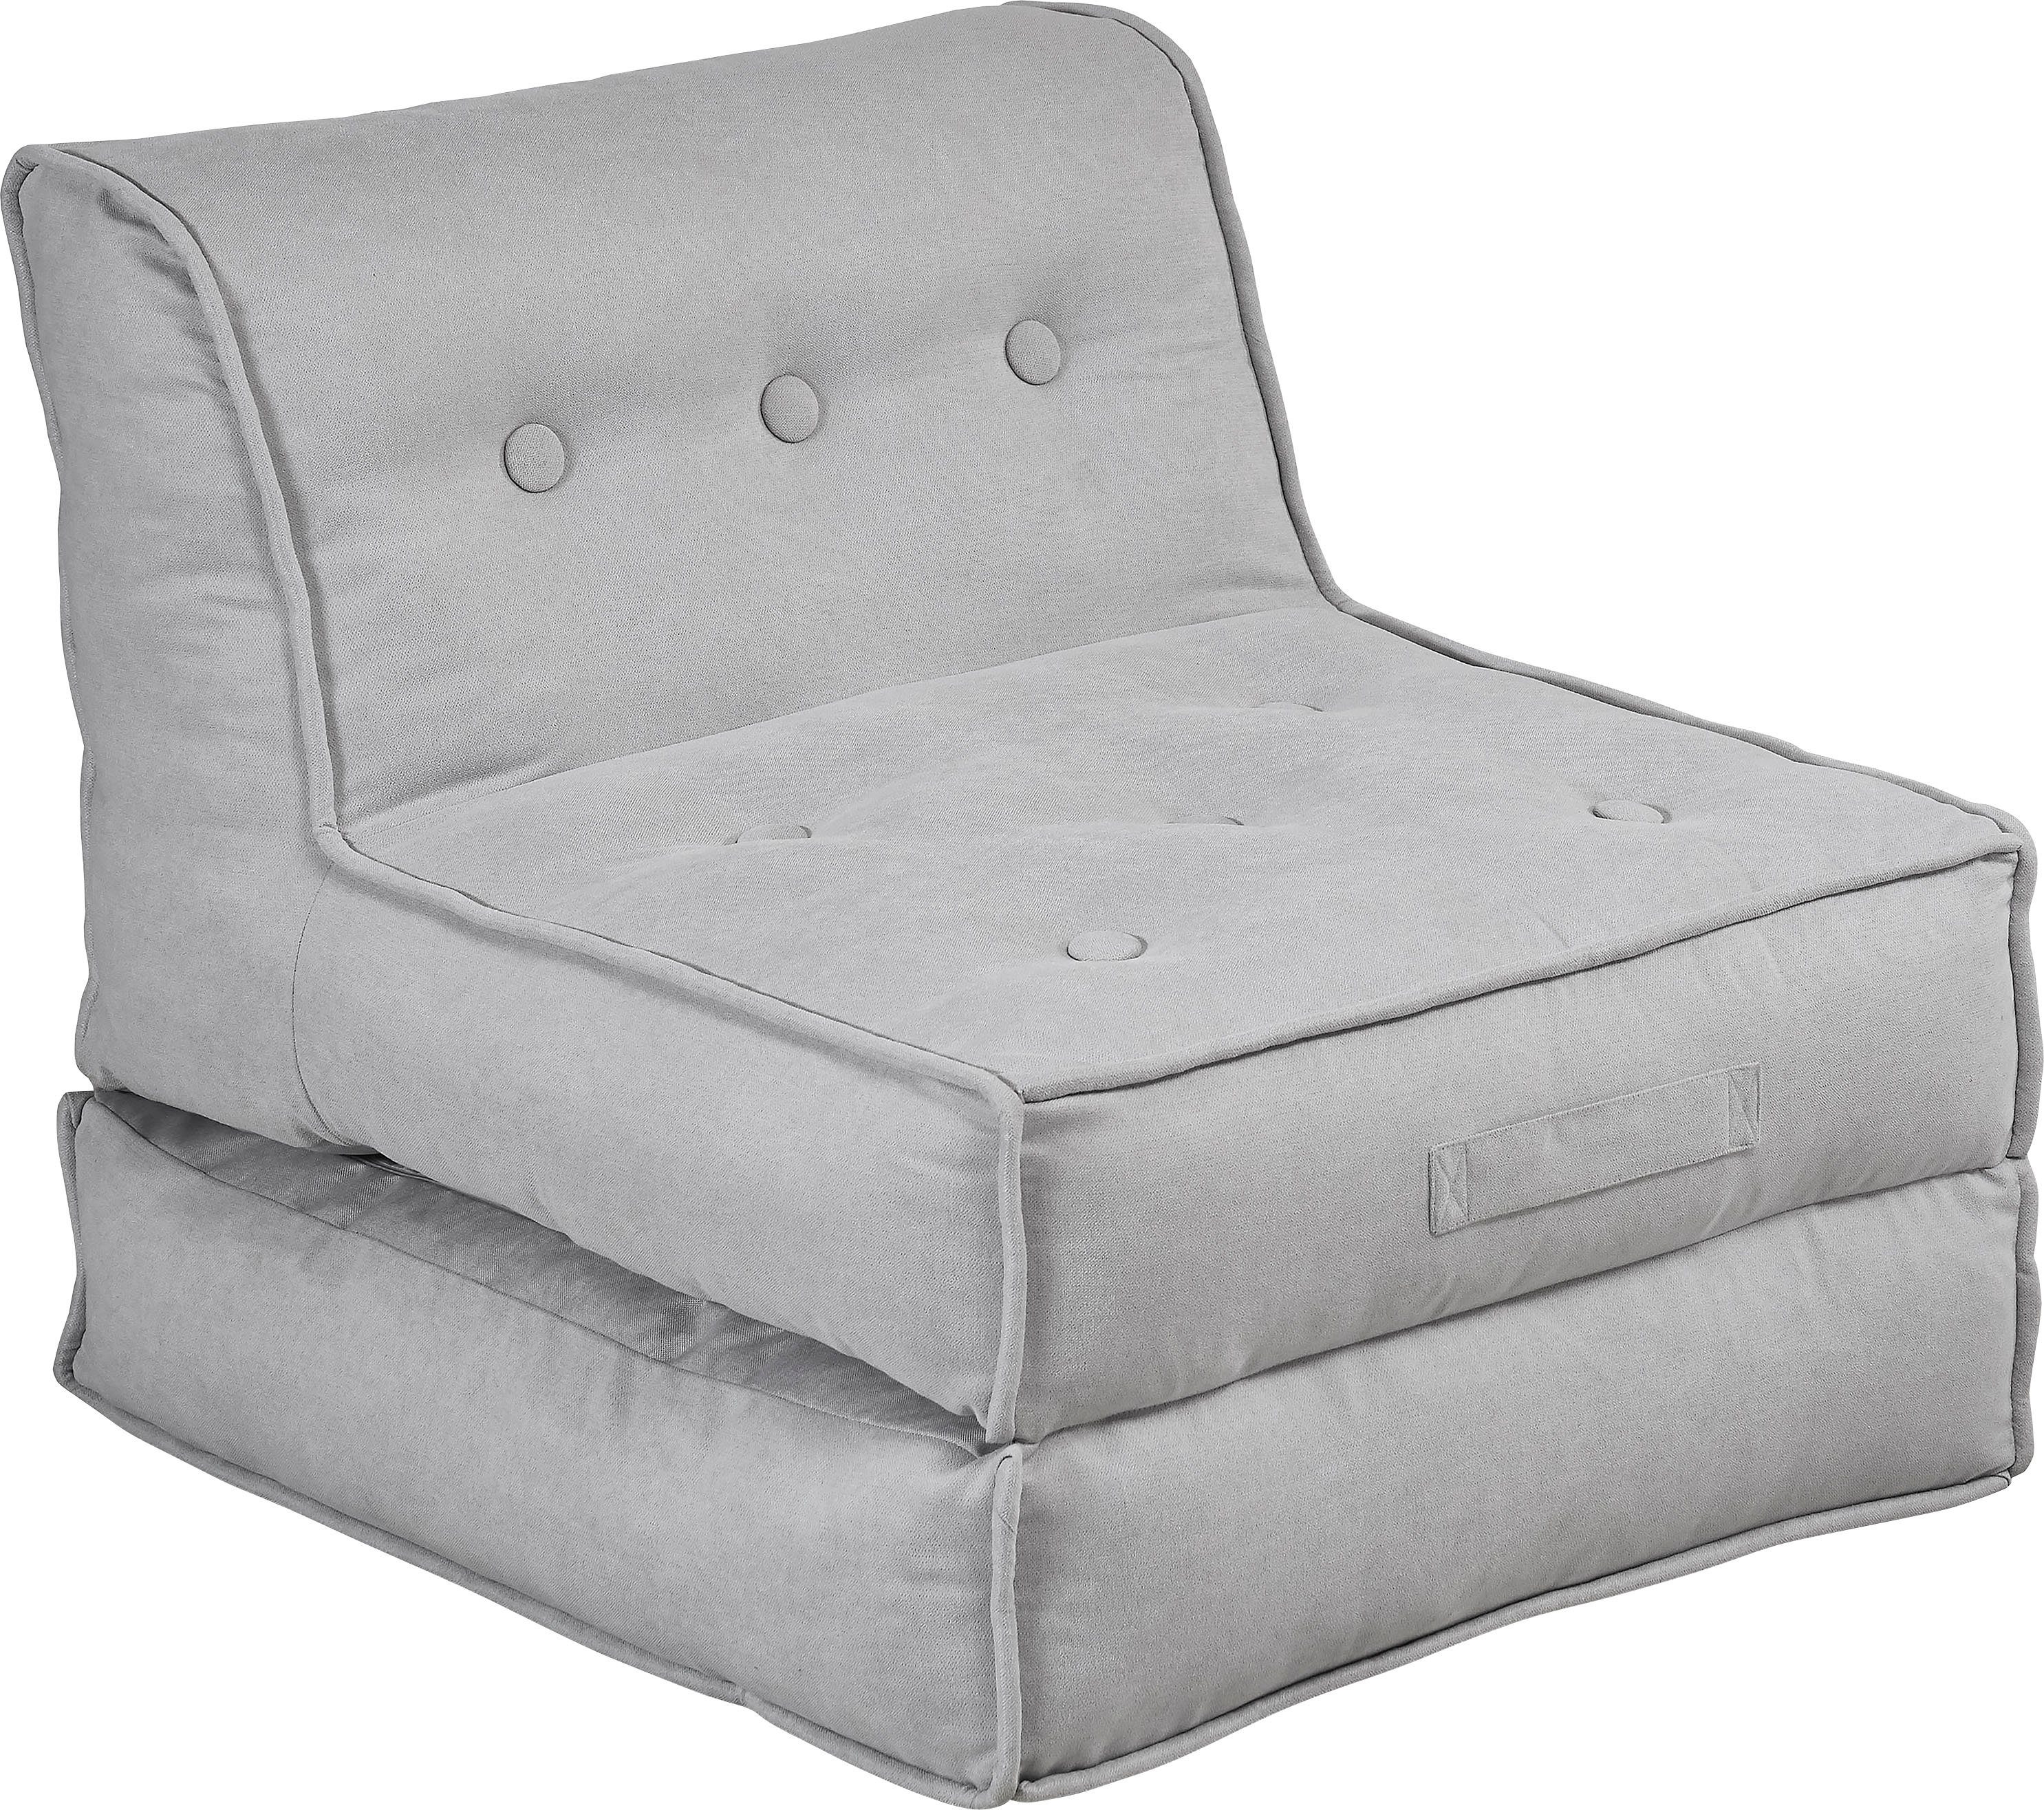 inosign fauteuil caspar loungestoel in 2 afmetingen, met slaapfunctie en poef-functie. grijs